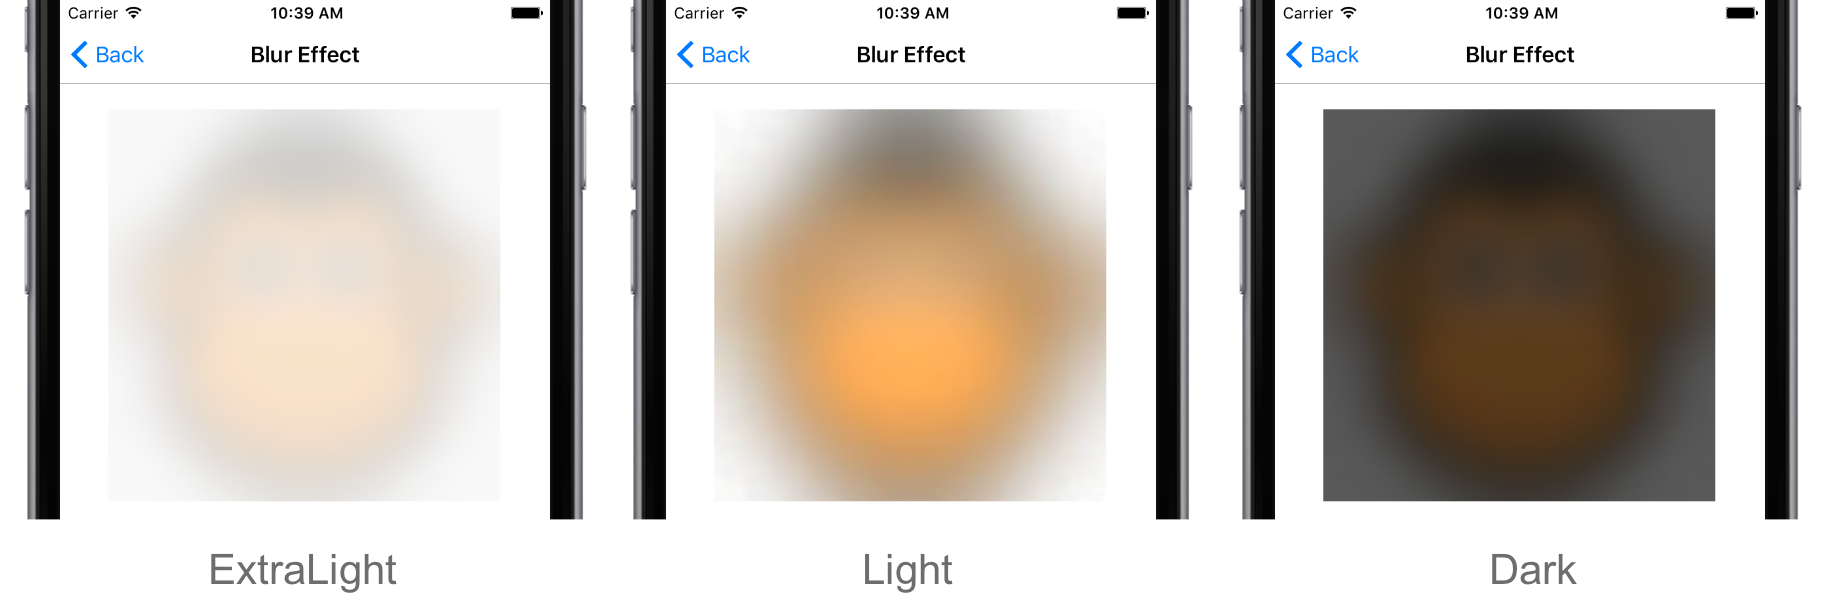 Blur Effect Platform-Specific